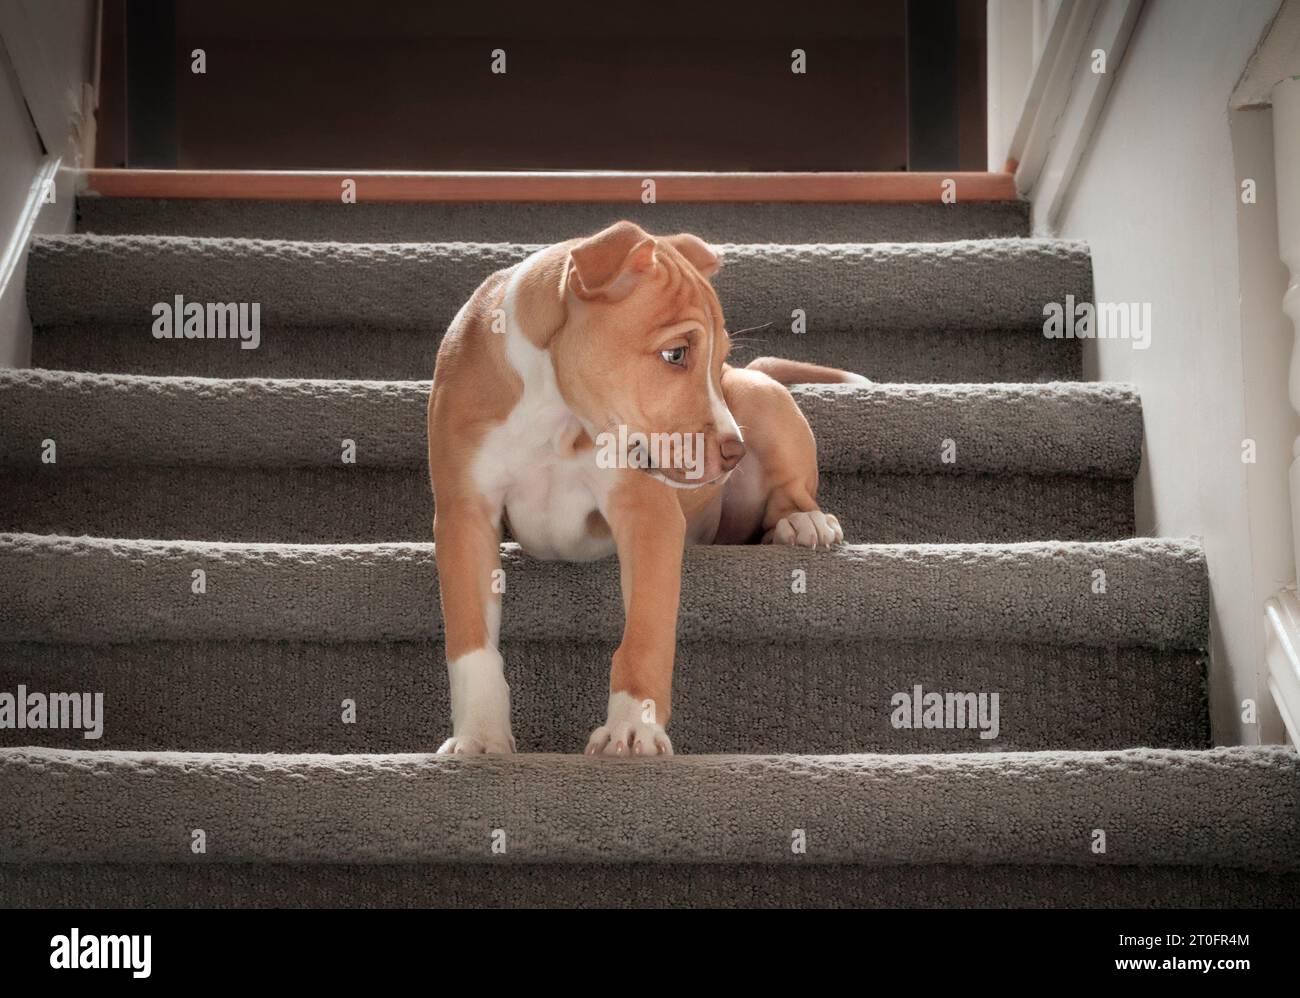 Chiot mignon assis dans les escaliers. chien chiot de 12 semaines apprenant à descendre les escaliers. Langage corporel hésitant, timide ou effrayé. Chiot grimpant St Banque D'Images